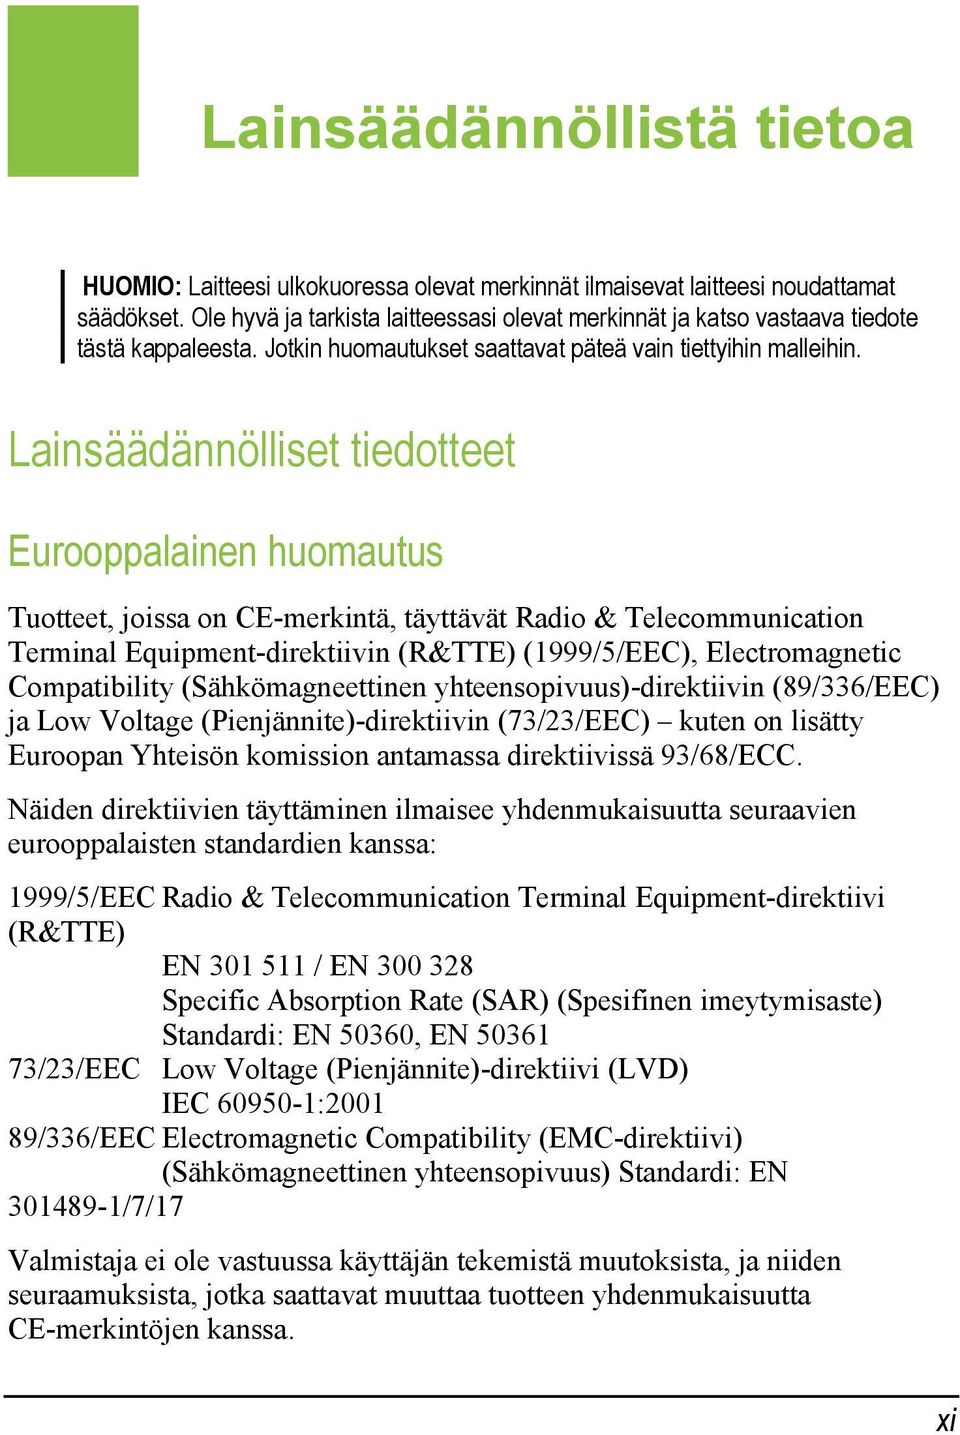 Lainsäädännölliset tiedotteet Eurooppalainen huomautus Tuotteet, joissa on CE-merkintä, täyttävät Radio & Telecommunication Terminal Equipment-direktiivin (R&TTE) (1999/5/EEC), Electromagnetic